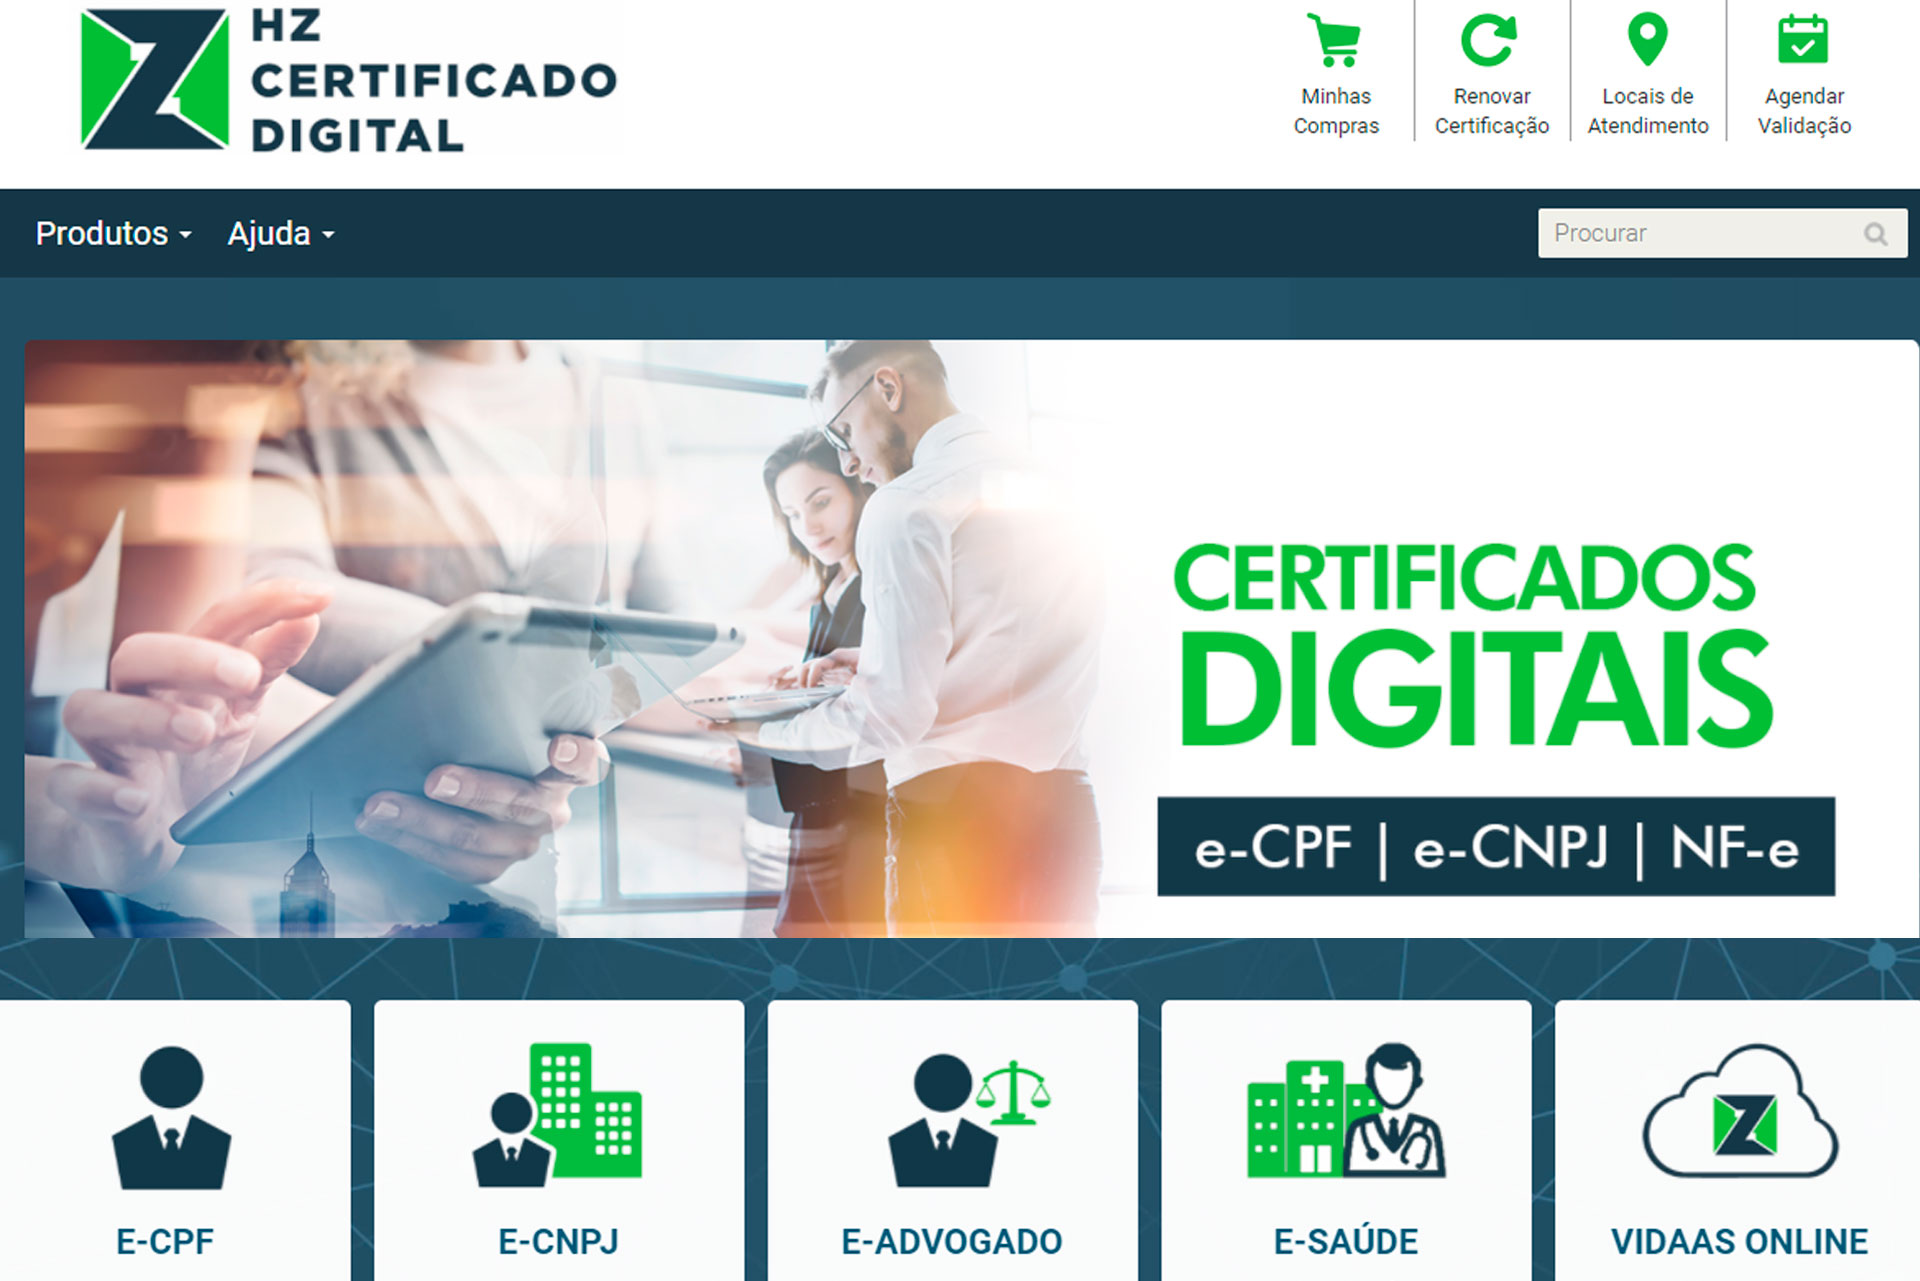 Dúvidas com a renovação de Certificado Digital totalmente online?